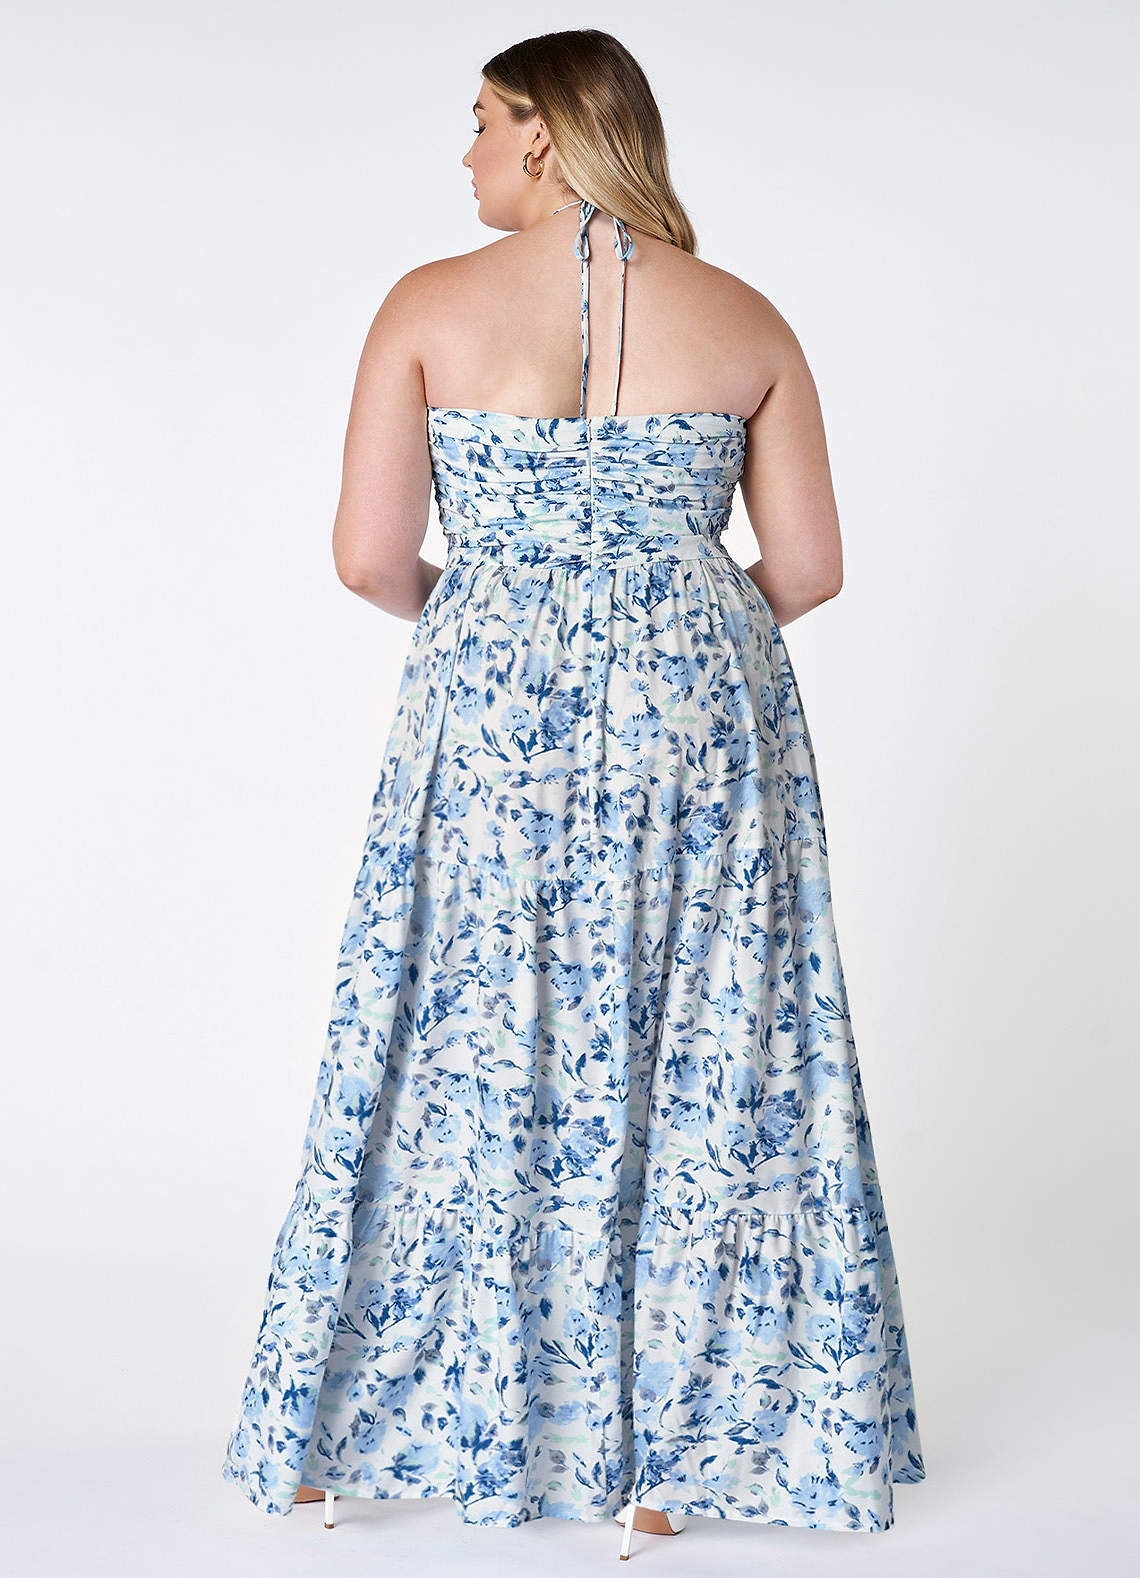 Buy Blue Floral Halter Neck Dress by Designer JODI Online at